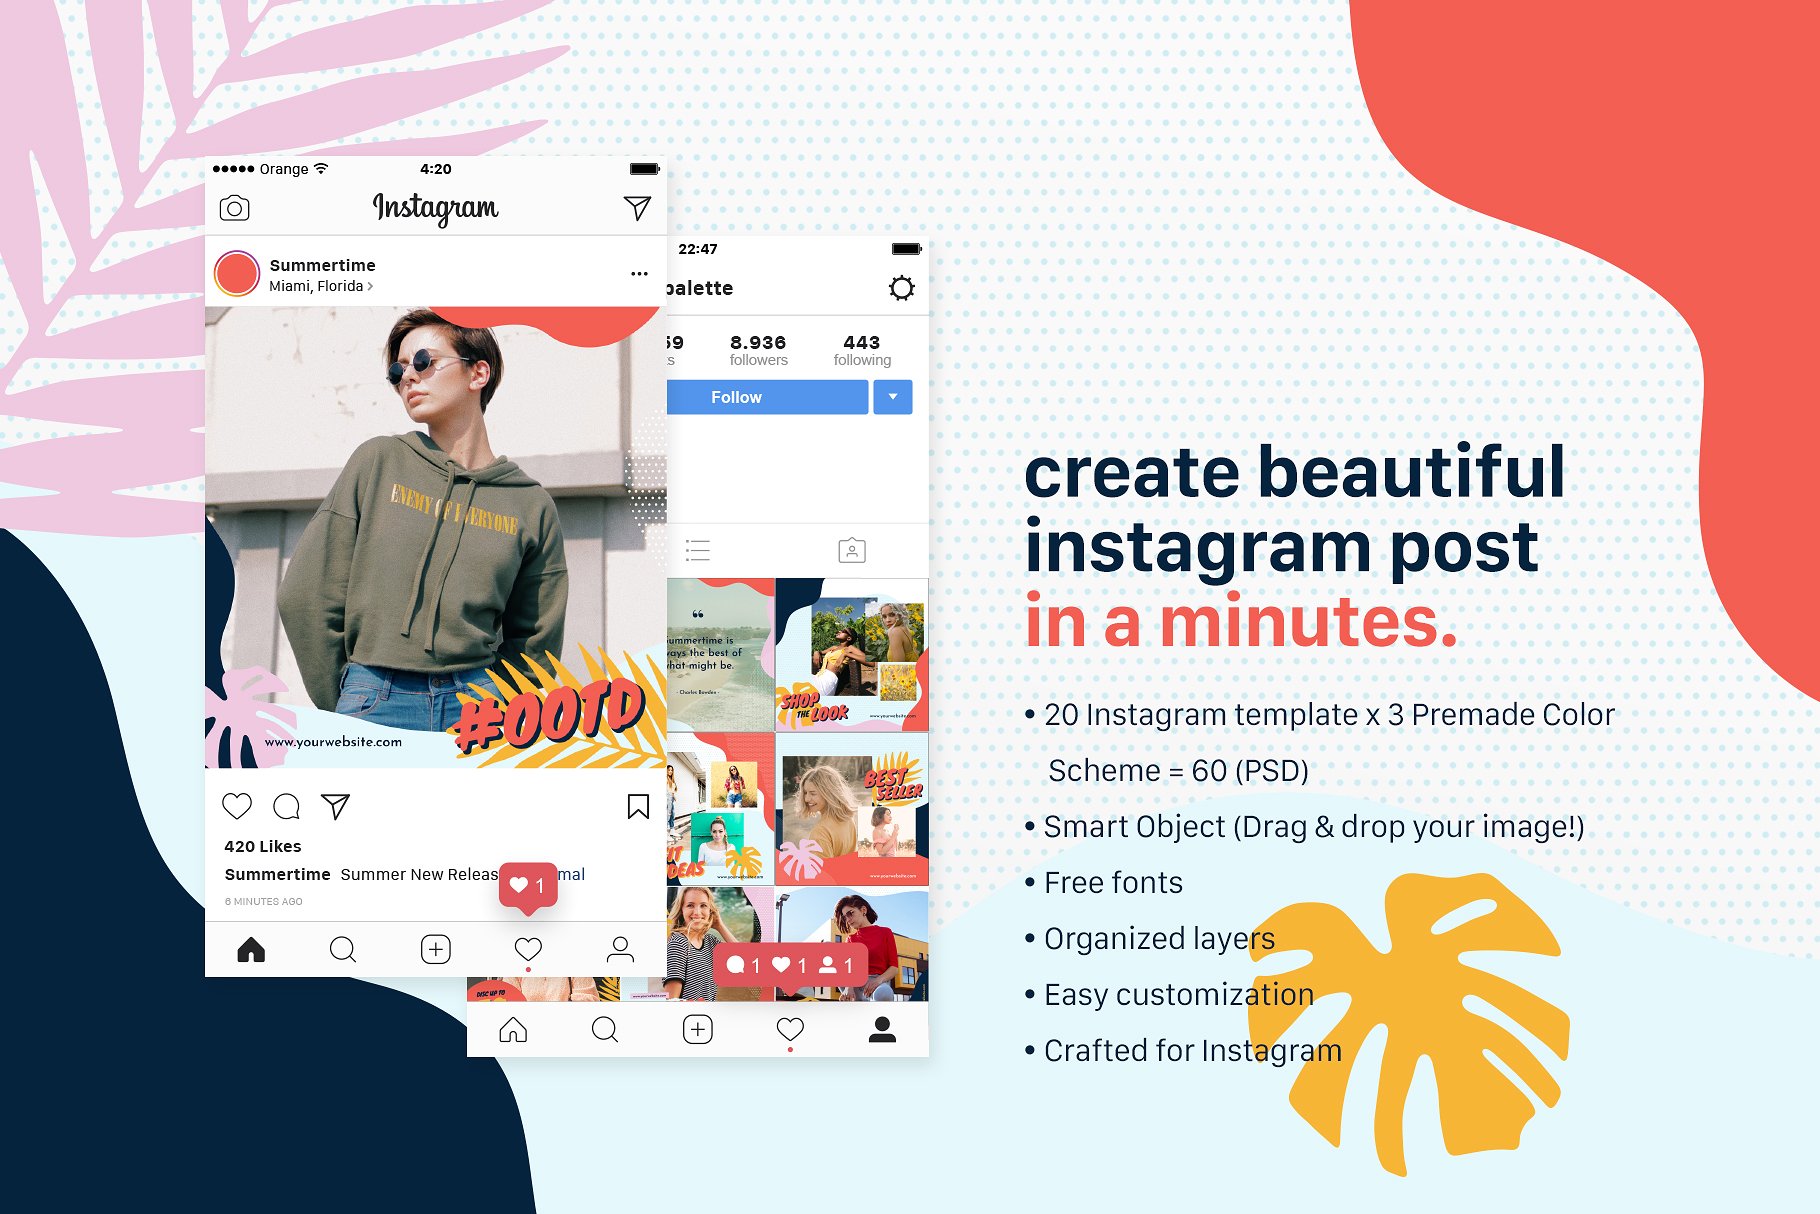 时尚生活方式社交媒体文章贴图模板第一素材精选 Instagram Bundle – Summertime插图(1)